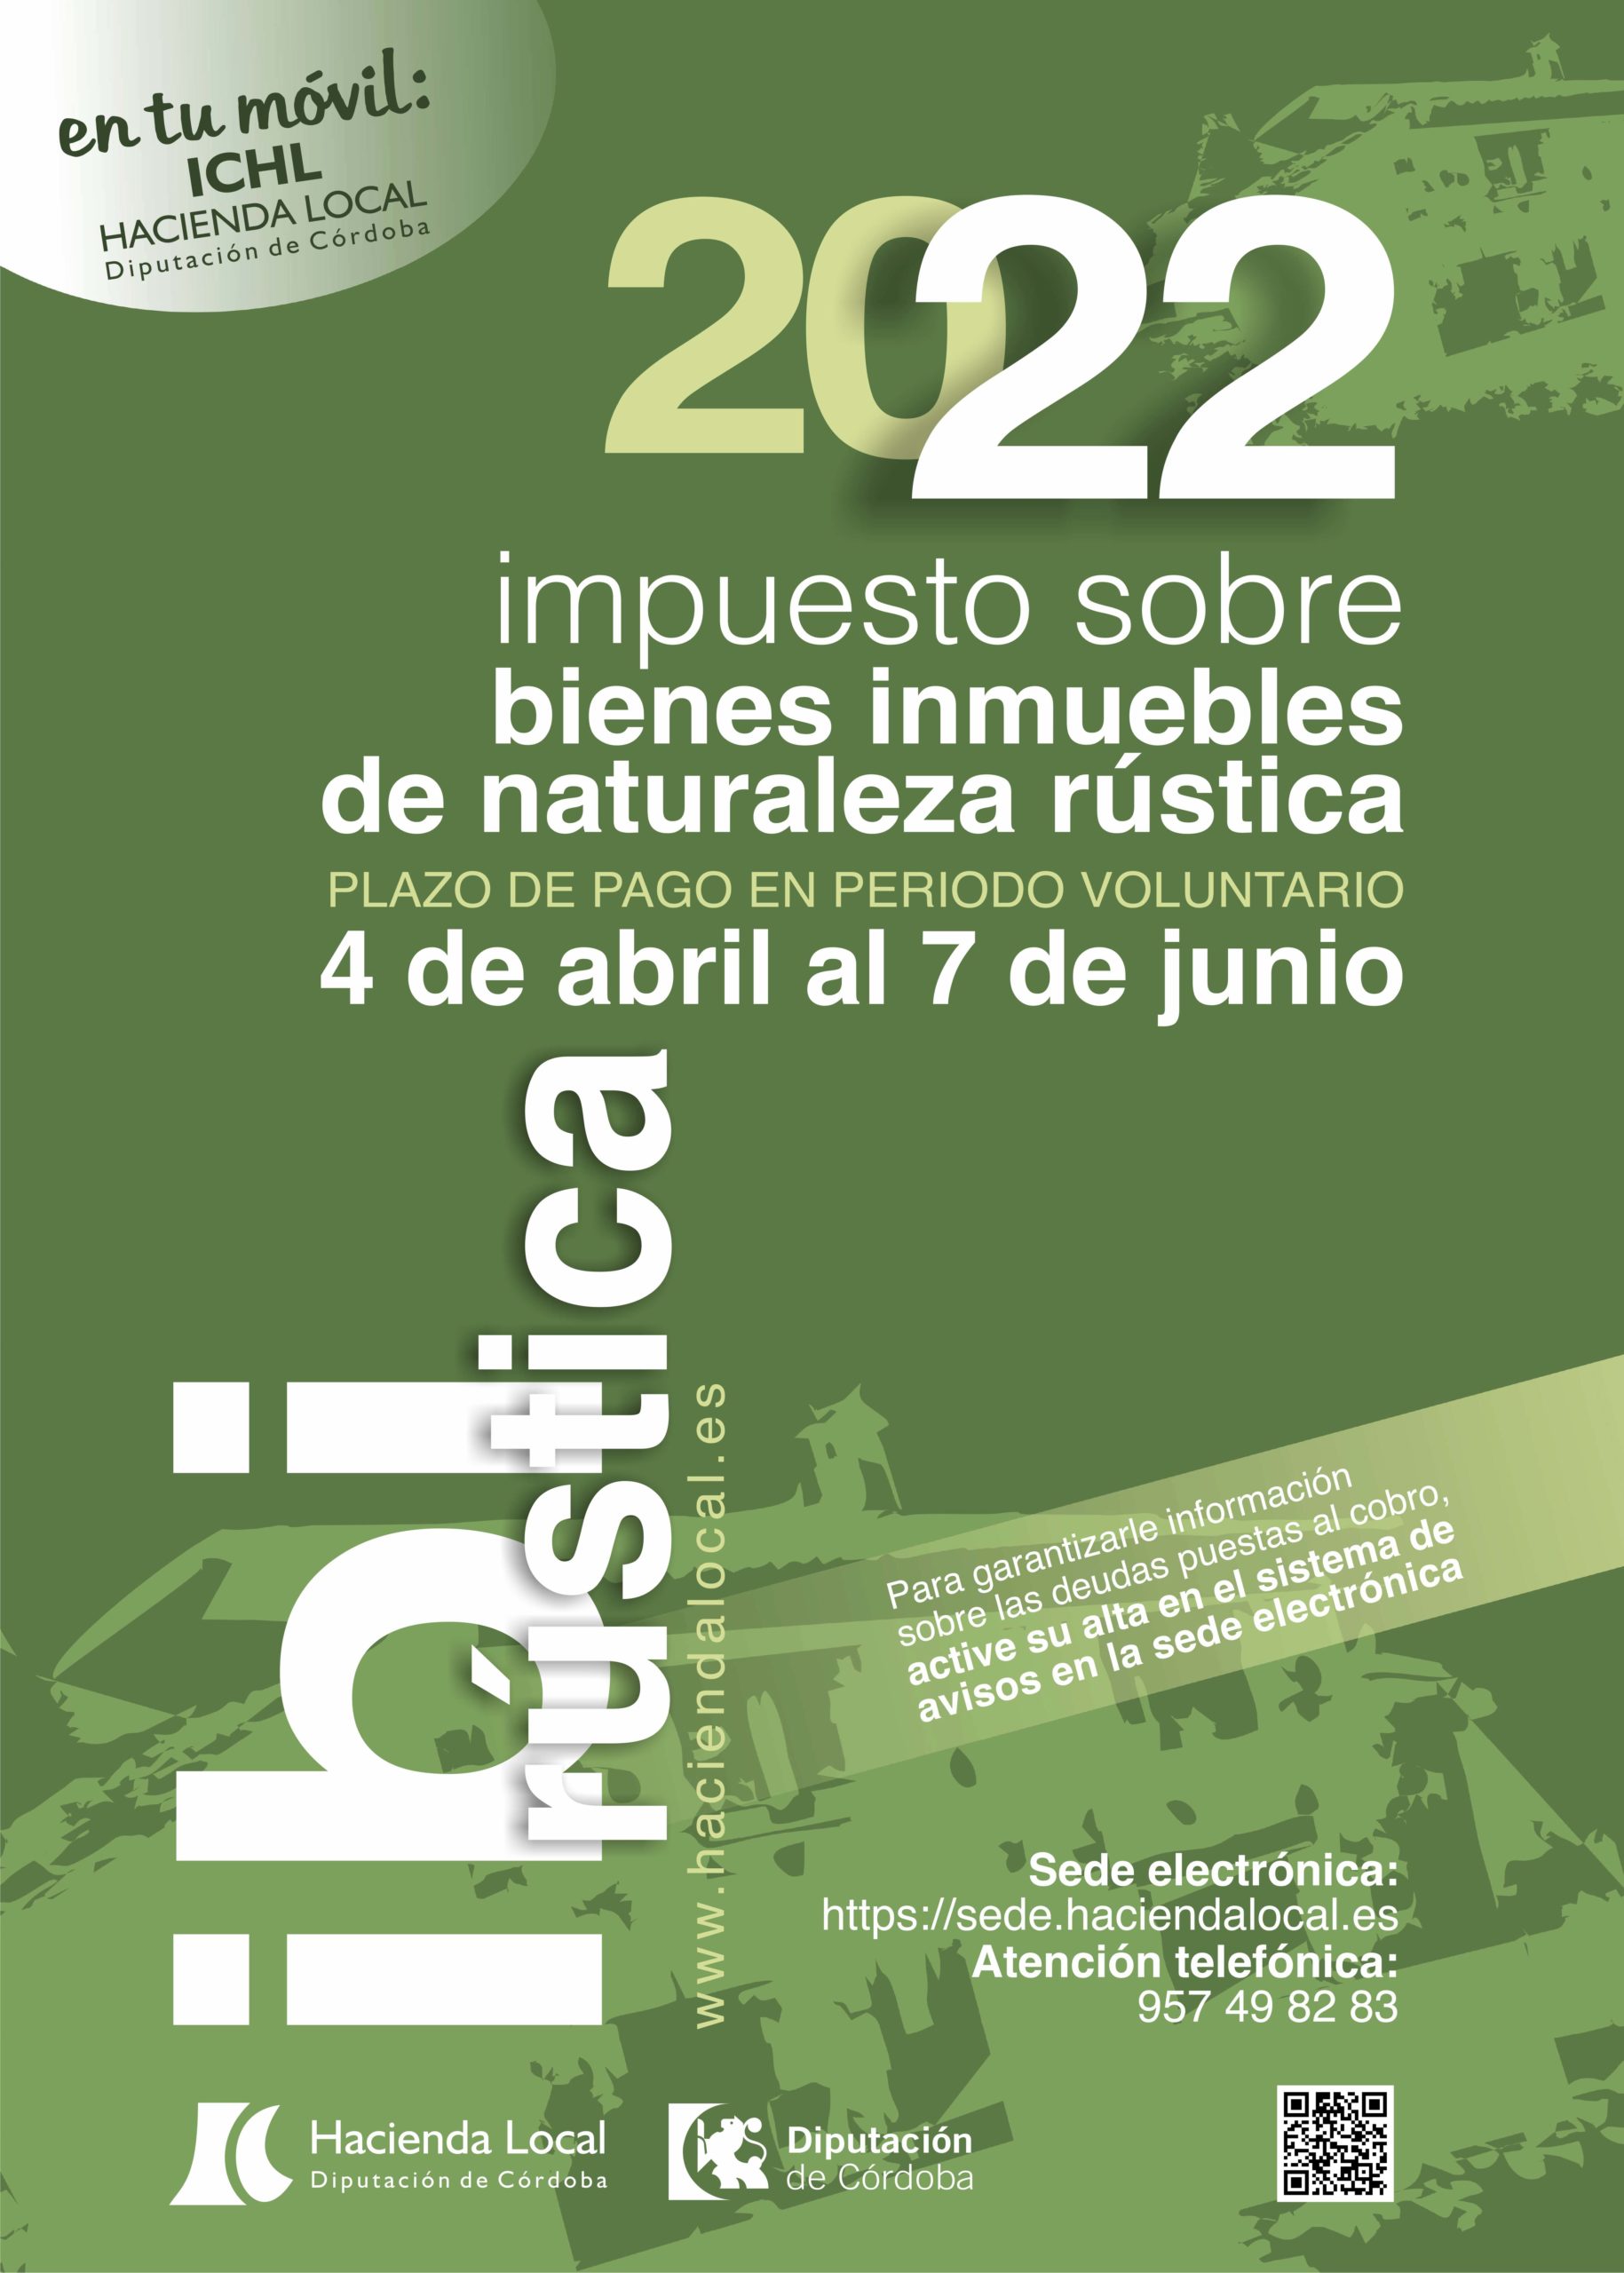 HACIENDA LOCAL - Impuesto Sobre Bienes e Inmuebles de Naturaleza Rústica 2022